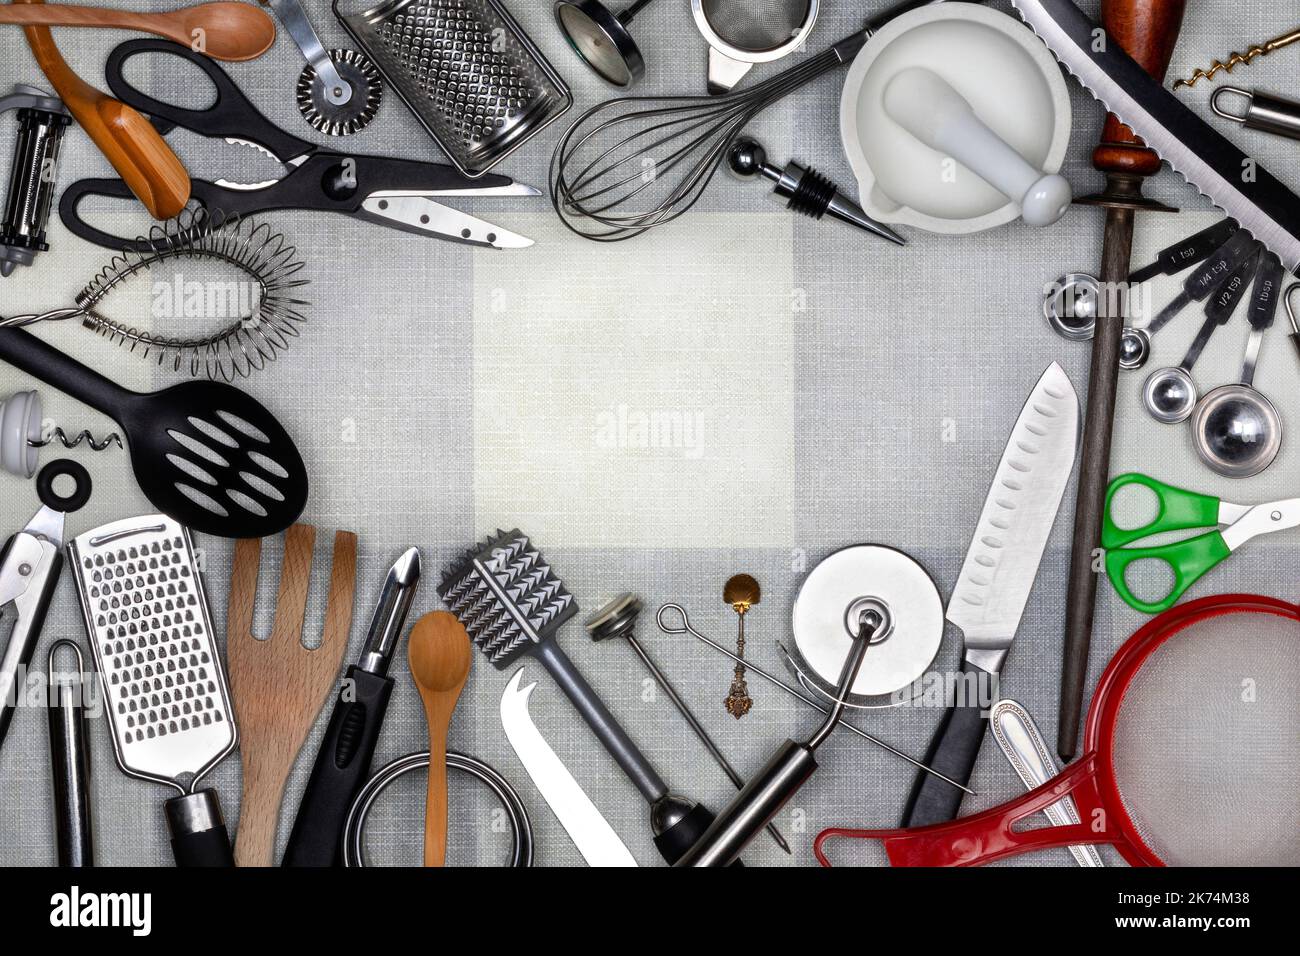 Utensili da cucina - gli utensili da cucina sono piccoli utensili portatili utilizzati per la preparazione degli alimenti. Le attività comuni della cucina includono tagliare gli articoli dell'alimento a misura, baki Foto Stock